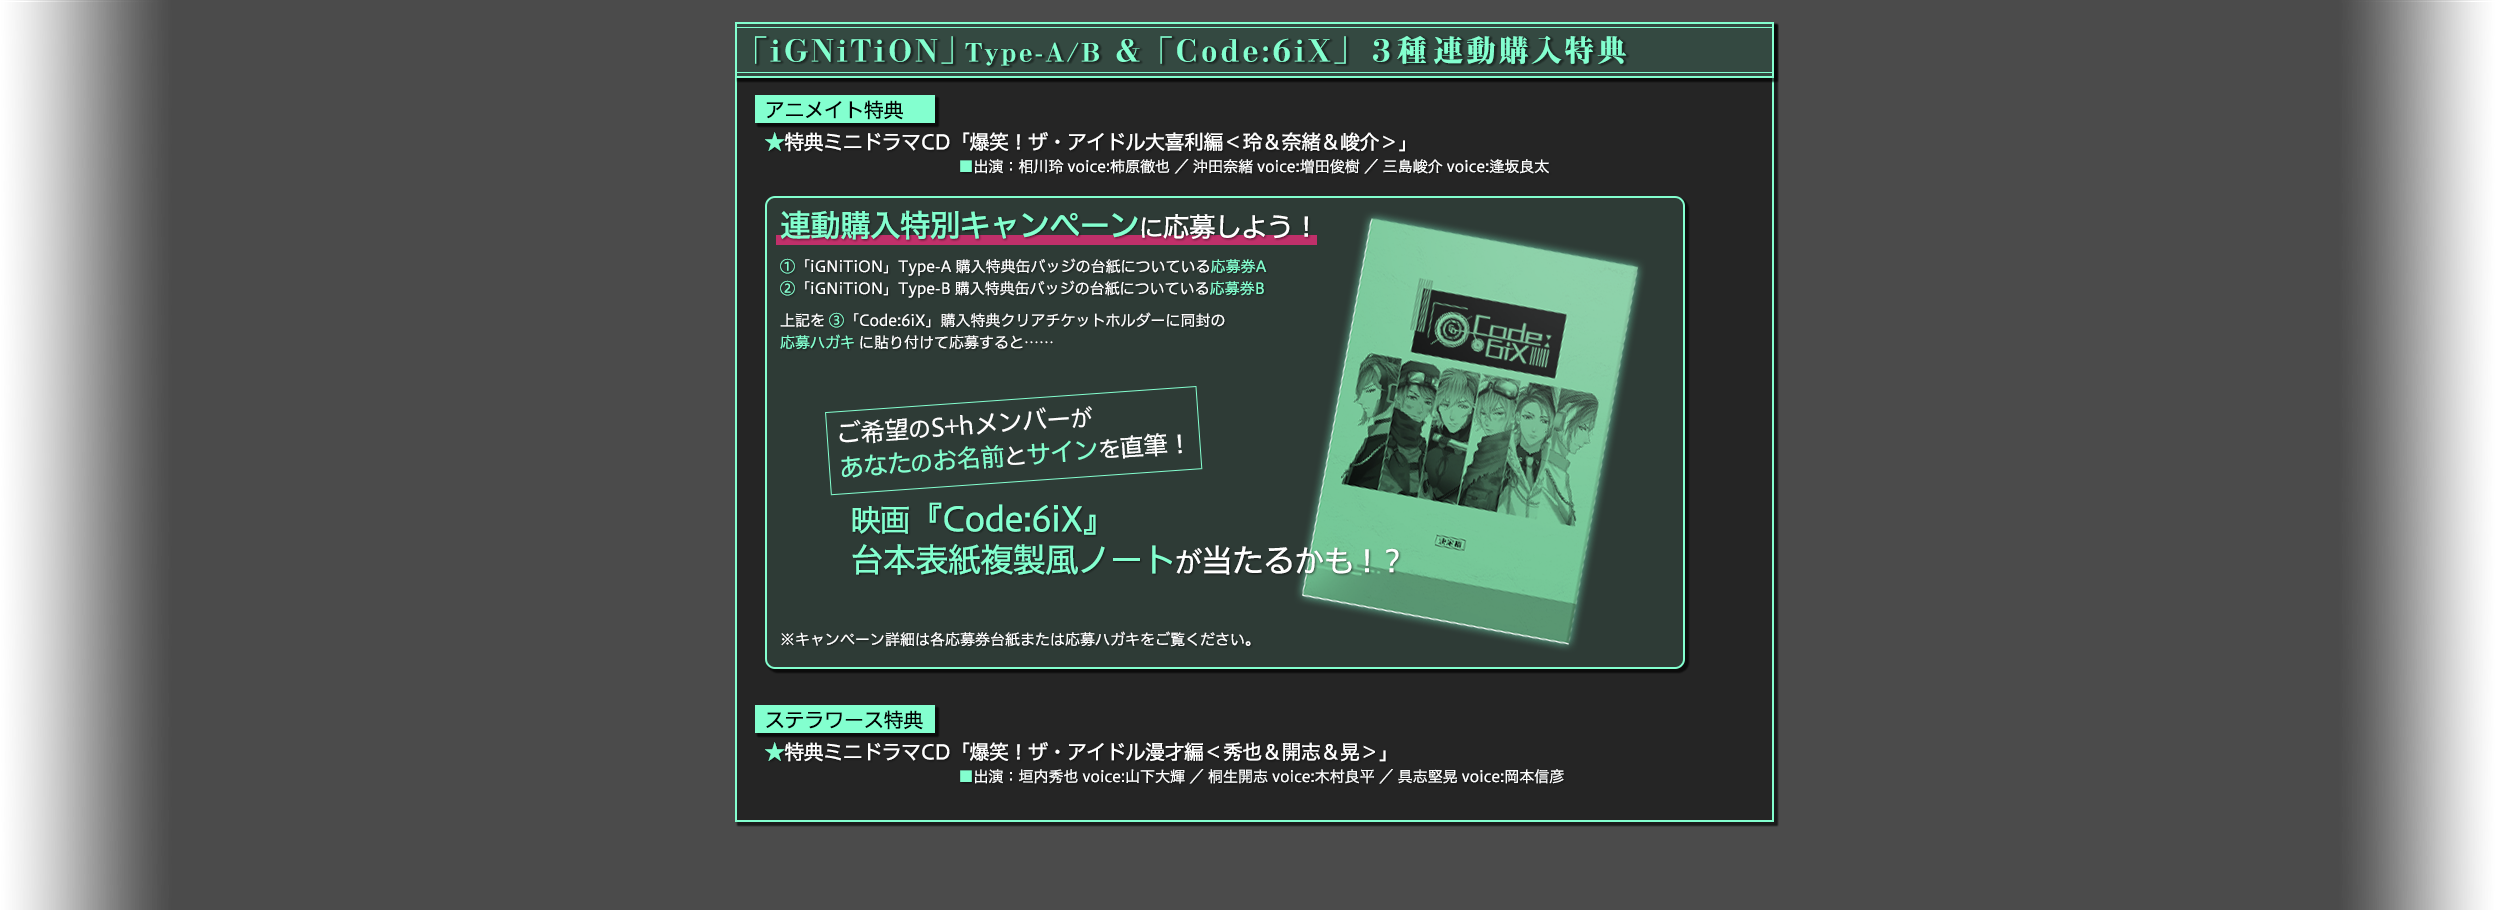 Code:6iX CD情報